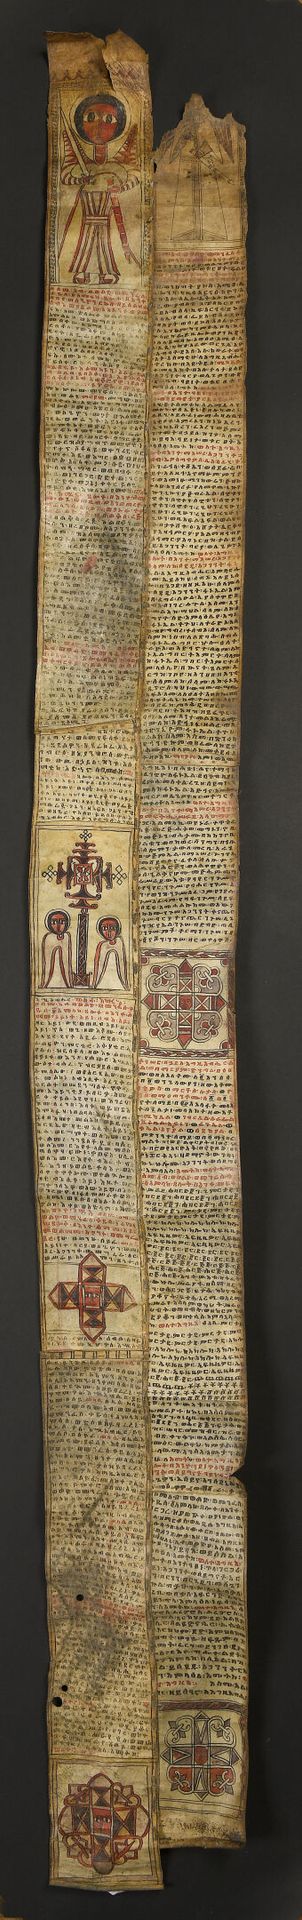 Null Coptic fabric, Ethiopia 
Fabric, ink, varnish 
L. 167 cm l. 17 cm

Provenan&hellip;